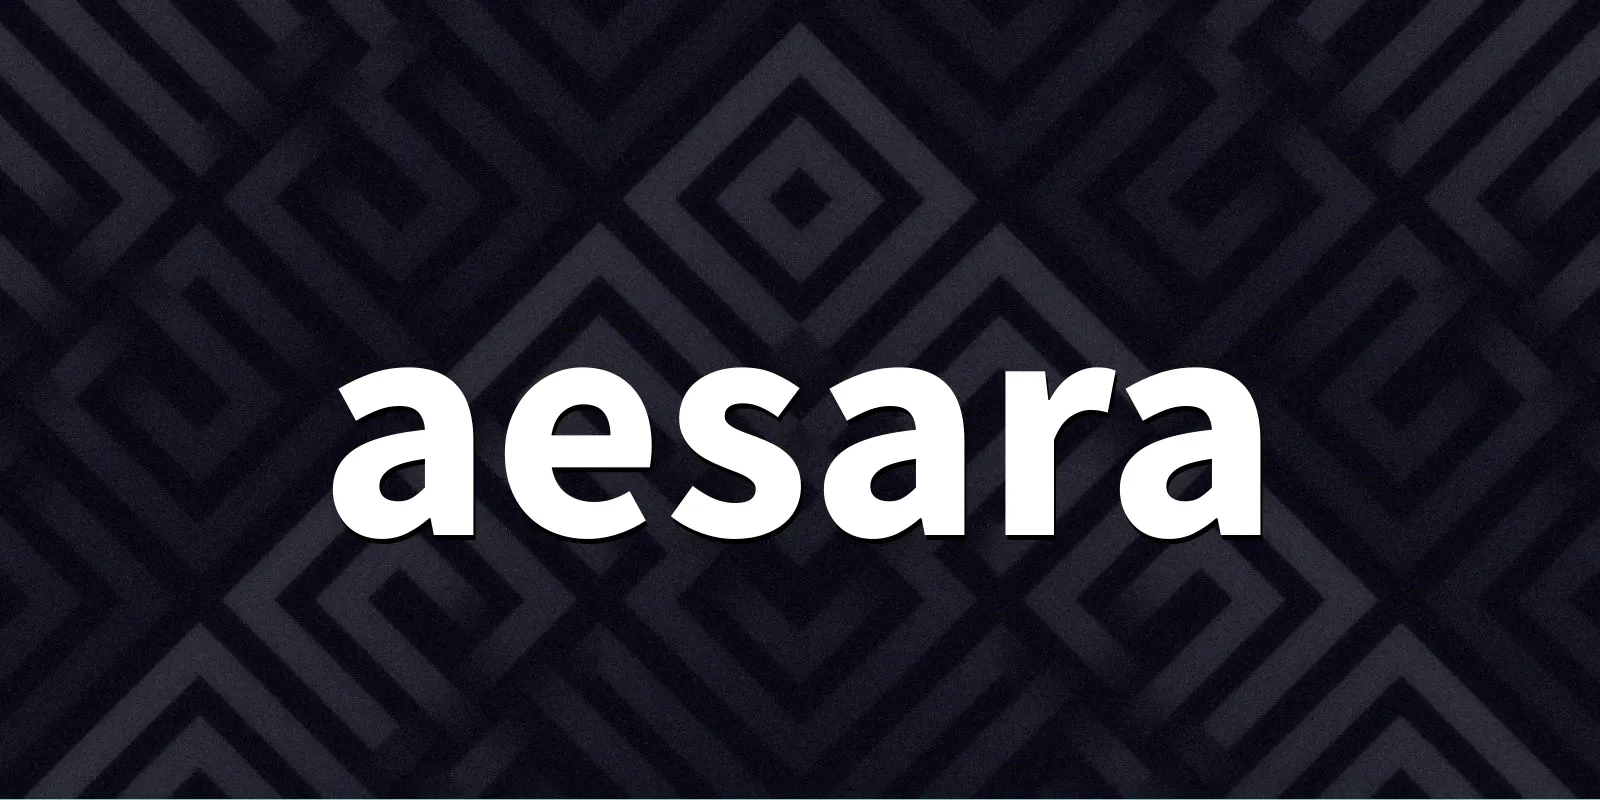 /pkg/a/aesara/aesara-banner.webp